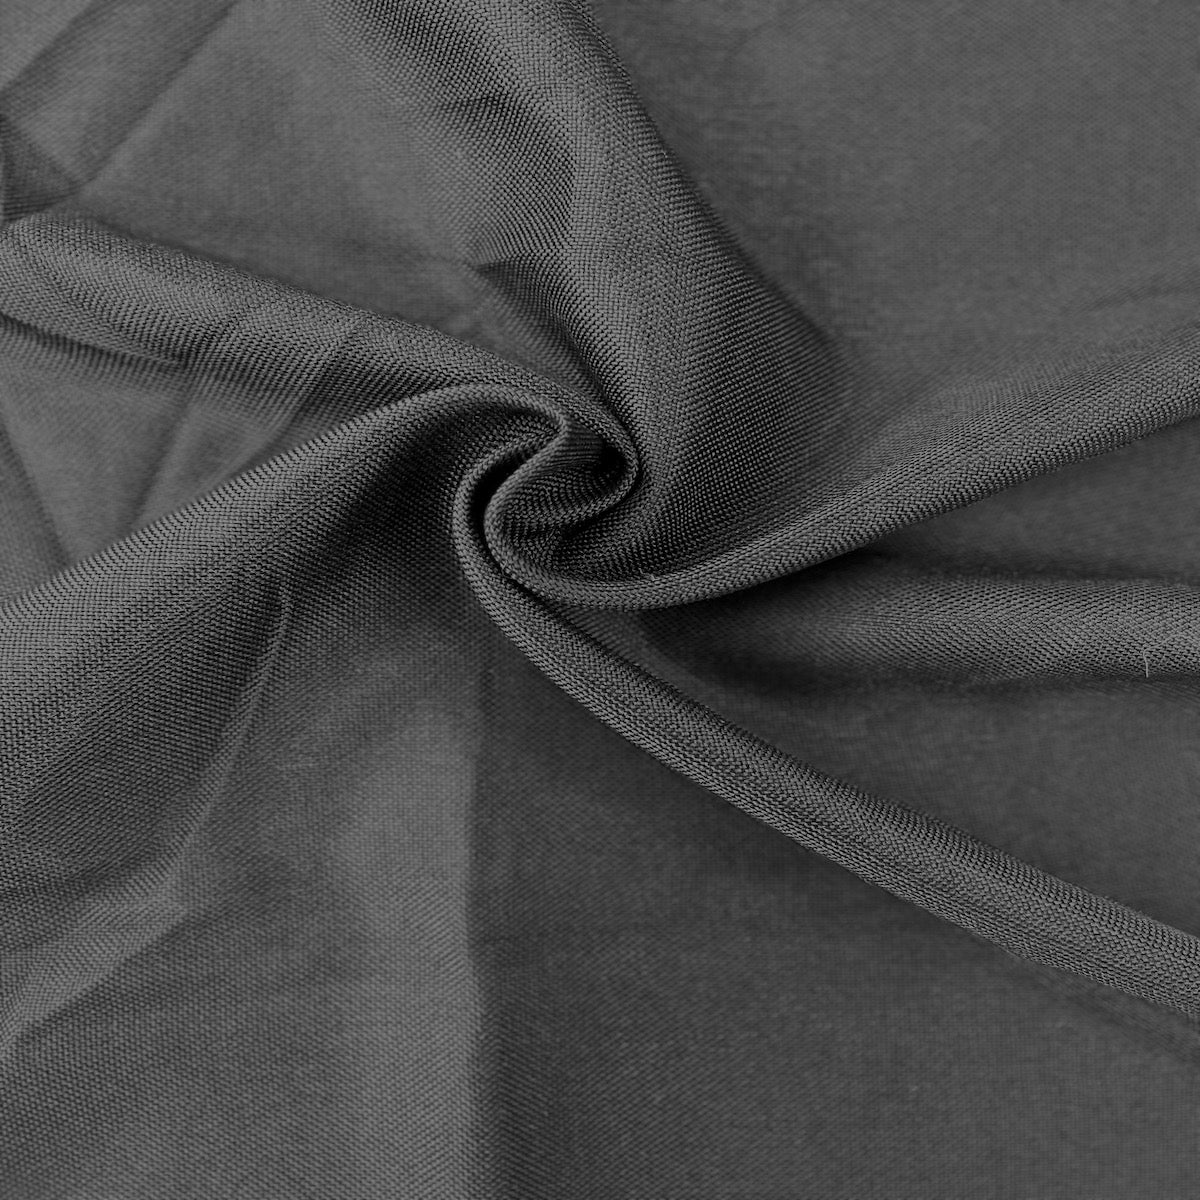 Black Vintage Linen Faux Burlap Fabric